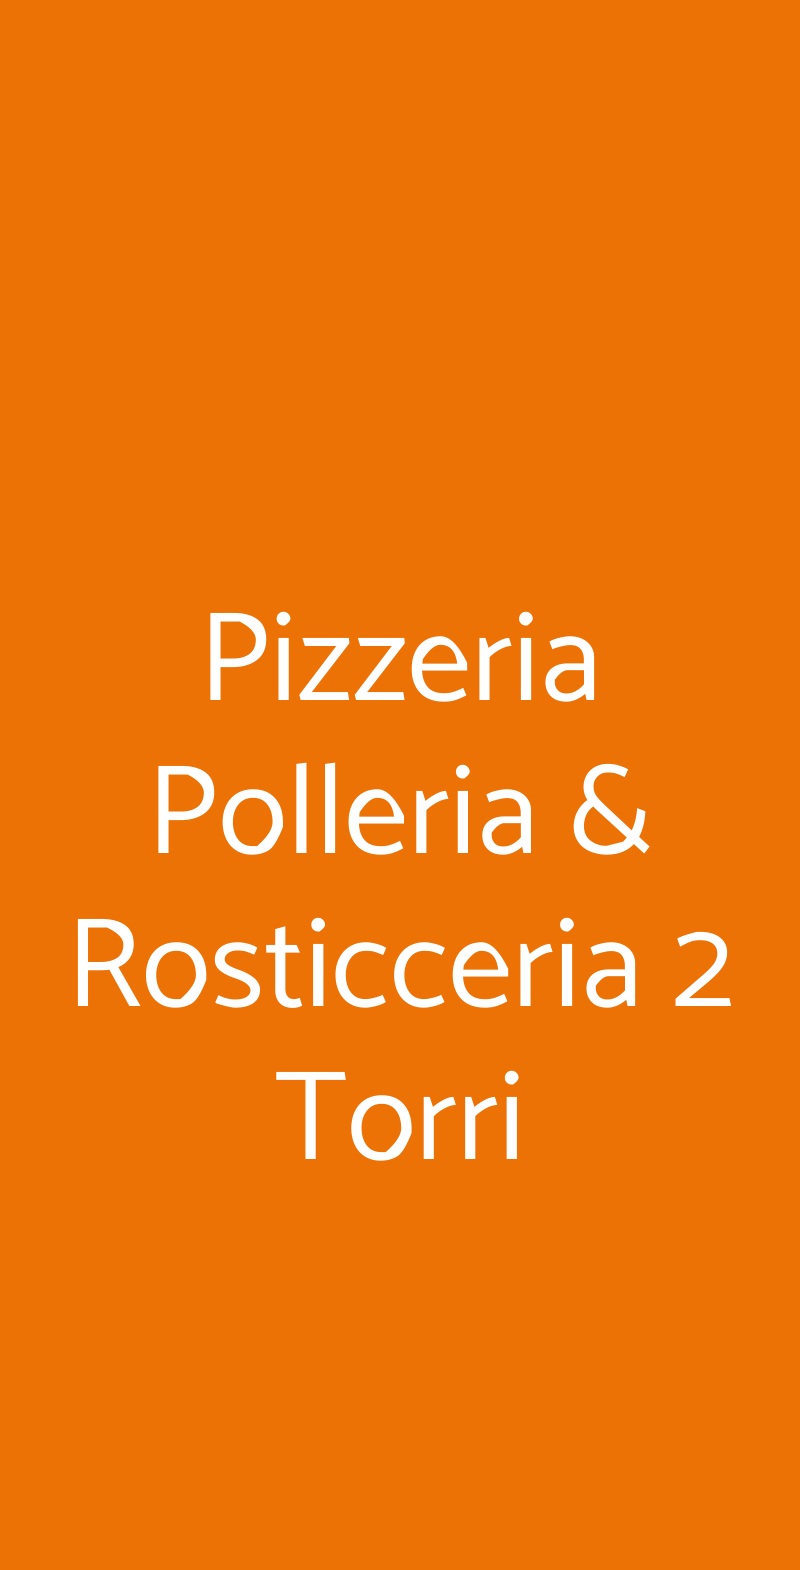 Pizzeria Polleria & Rosticceria 2 Torri Bologna menù 1 pagina